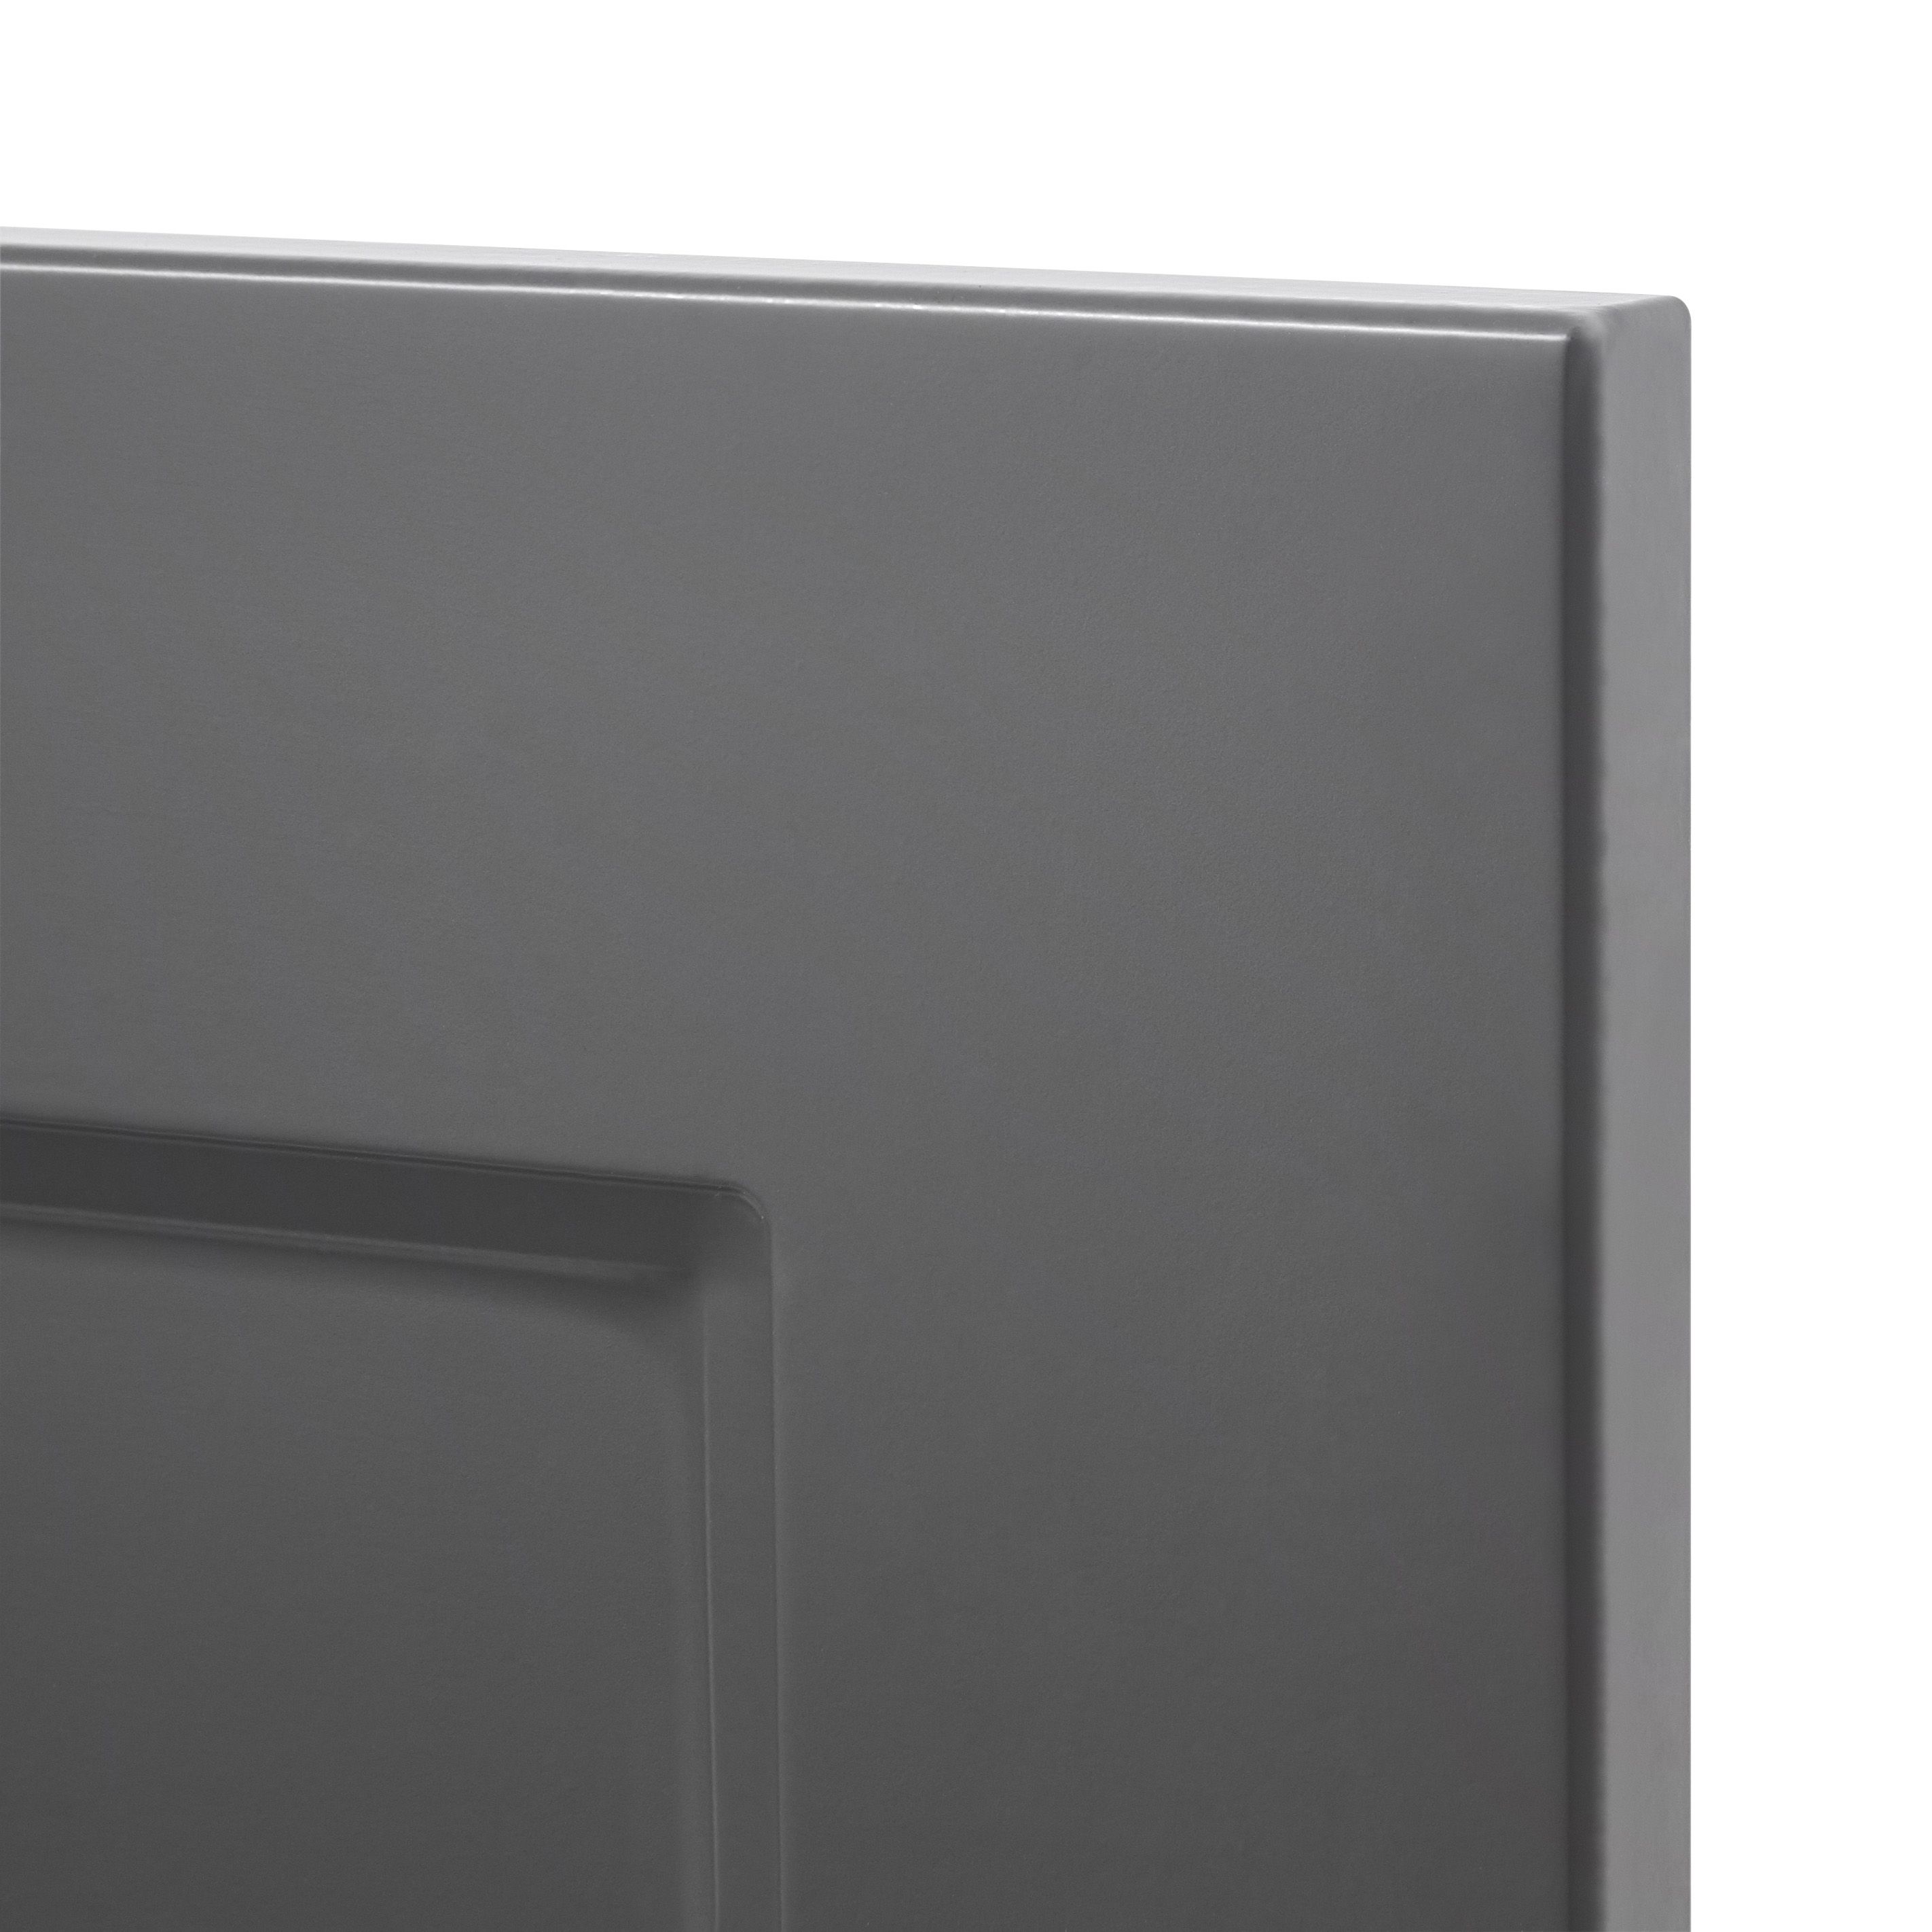 GoodHome Artemisia Matt graphite classic shaker Drawerline Door & drawer, (W)600mm (H)715mm (T)18mm